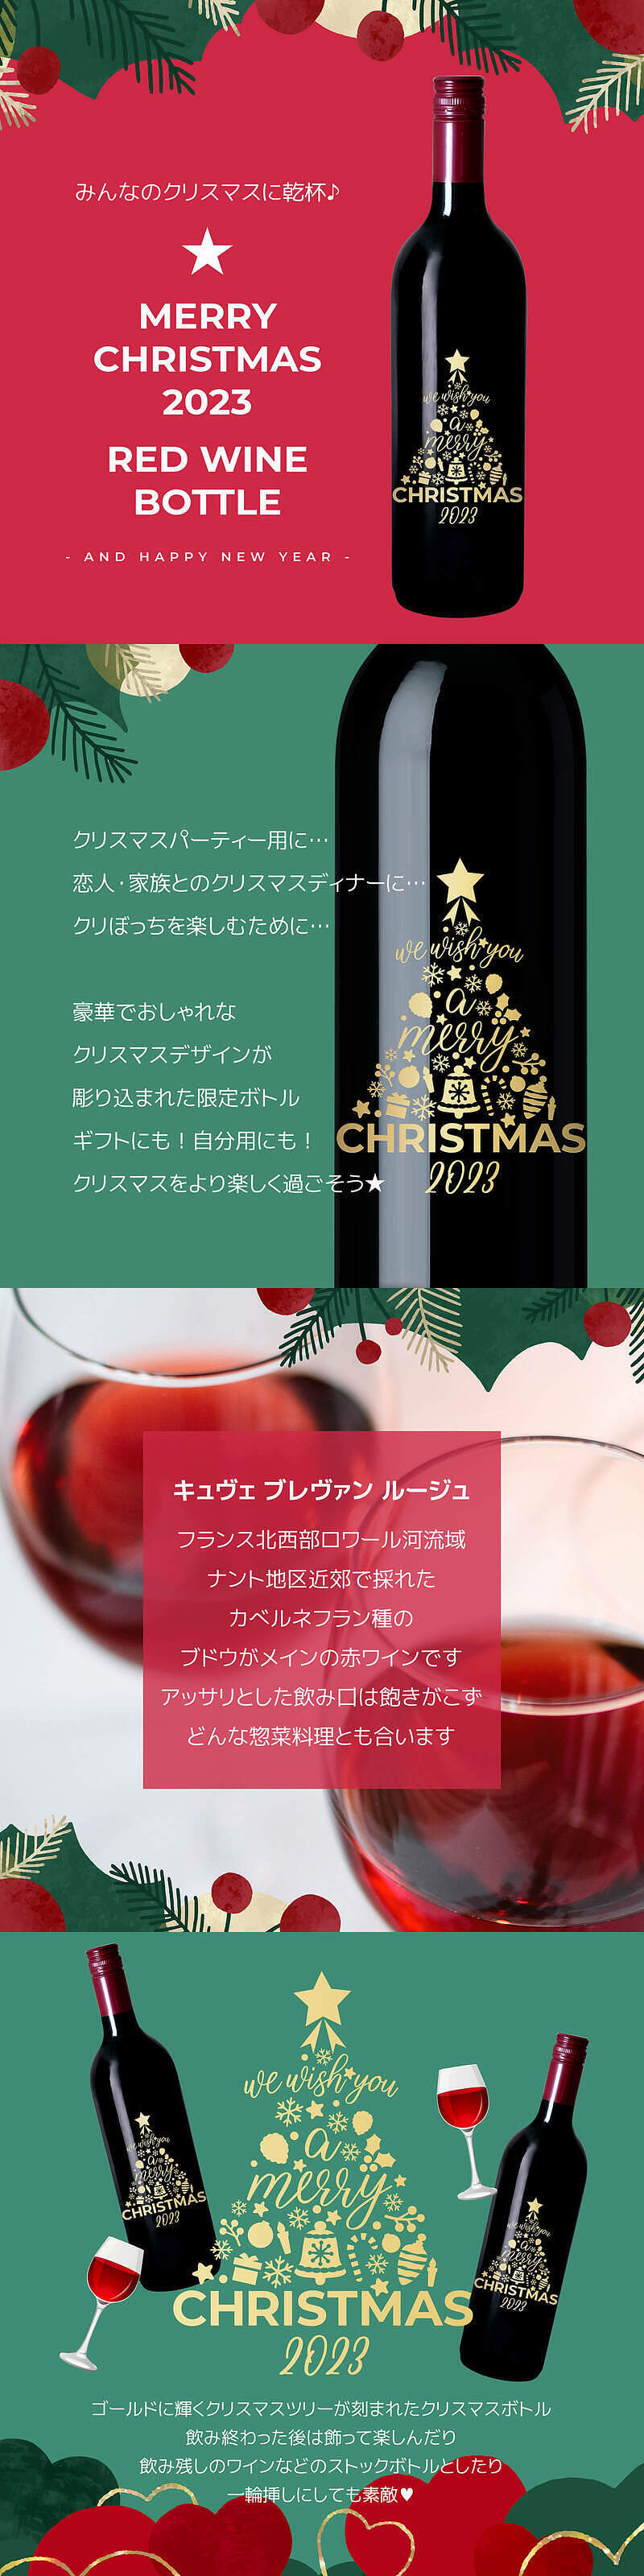 クリスマスツリーボトル 赤ワインの説明